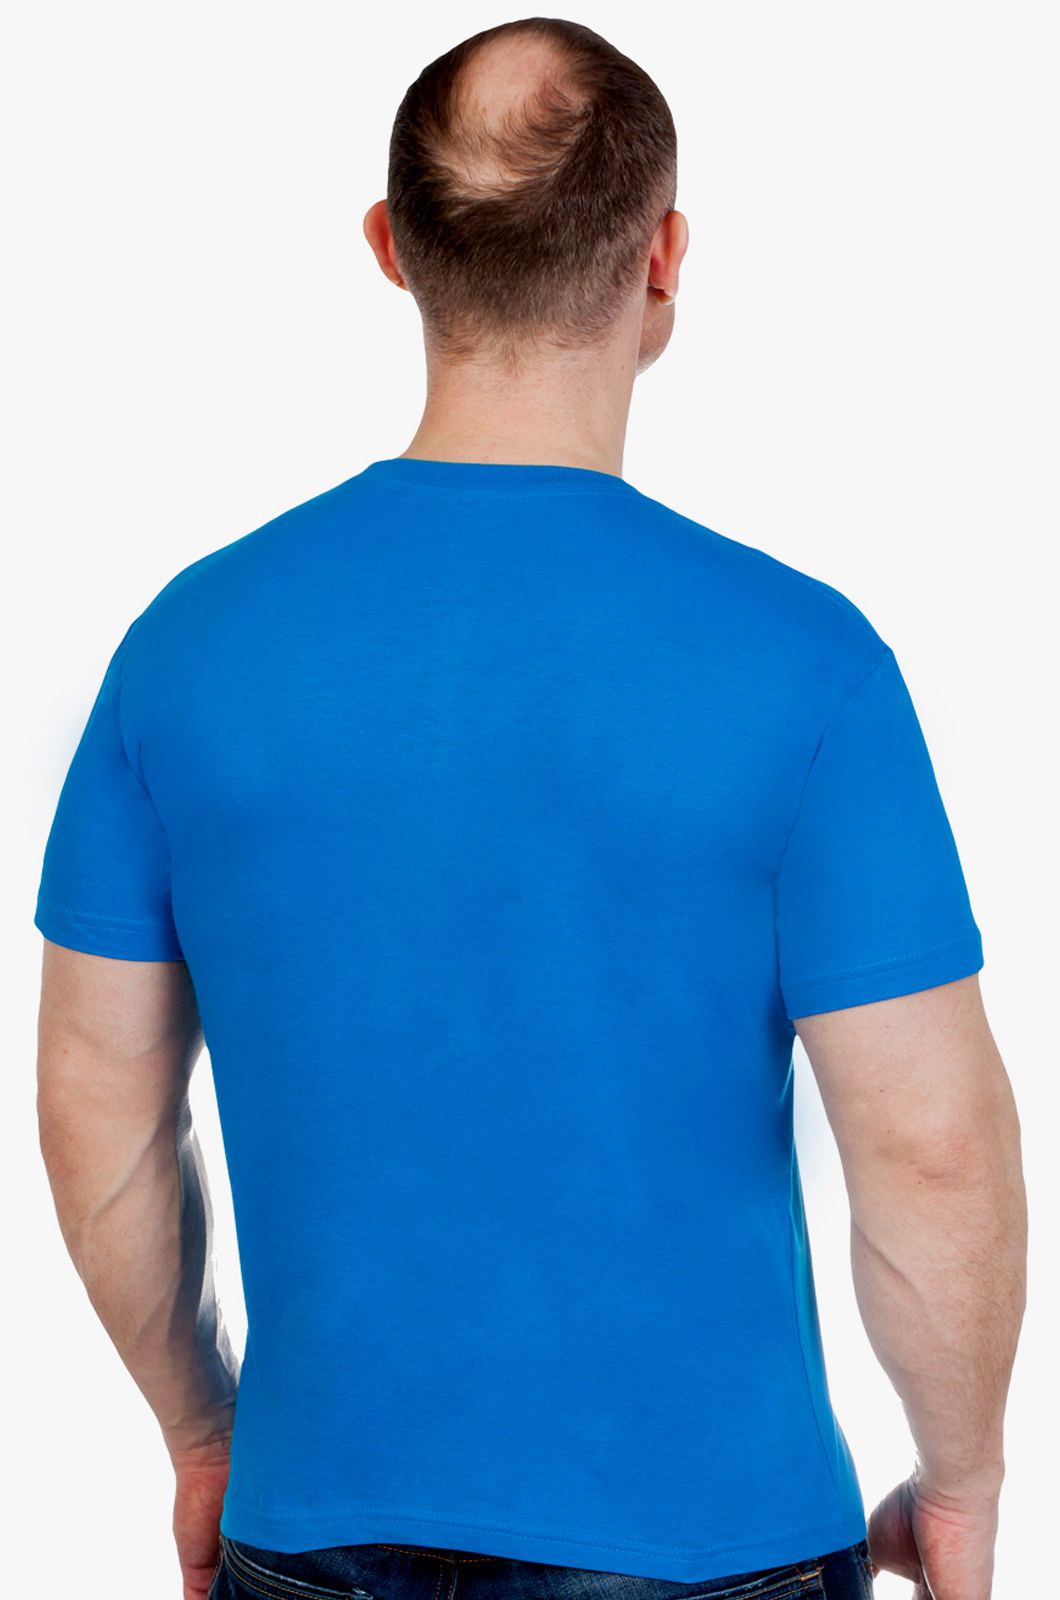 Купить хлопковую синюю футболку РОССИЯ с доставкой или самовывозом